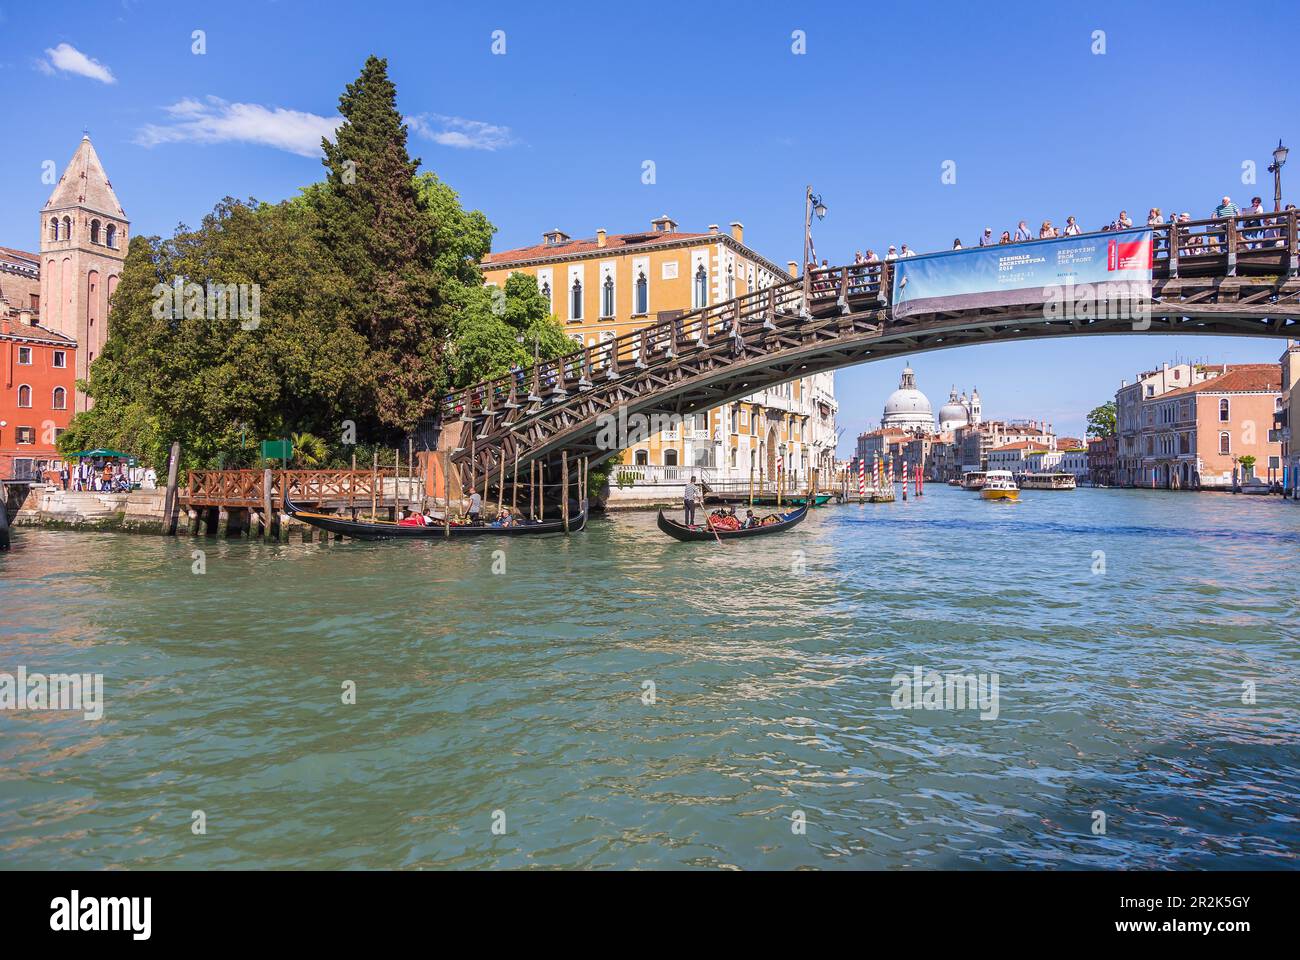 Venice, Campo San Vidal, Accadmia Bridge, Palazzo Cavalli-Franchetti, Grand Canal, and Santa Maria della Salute Stock Photo